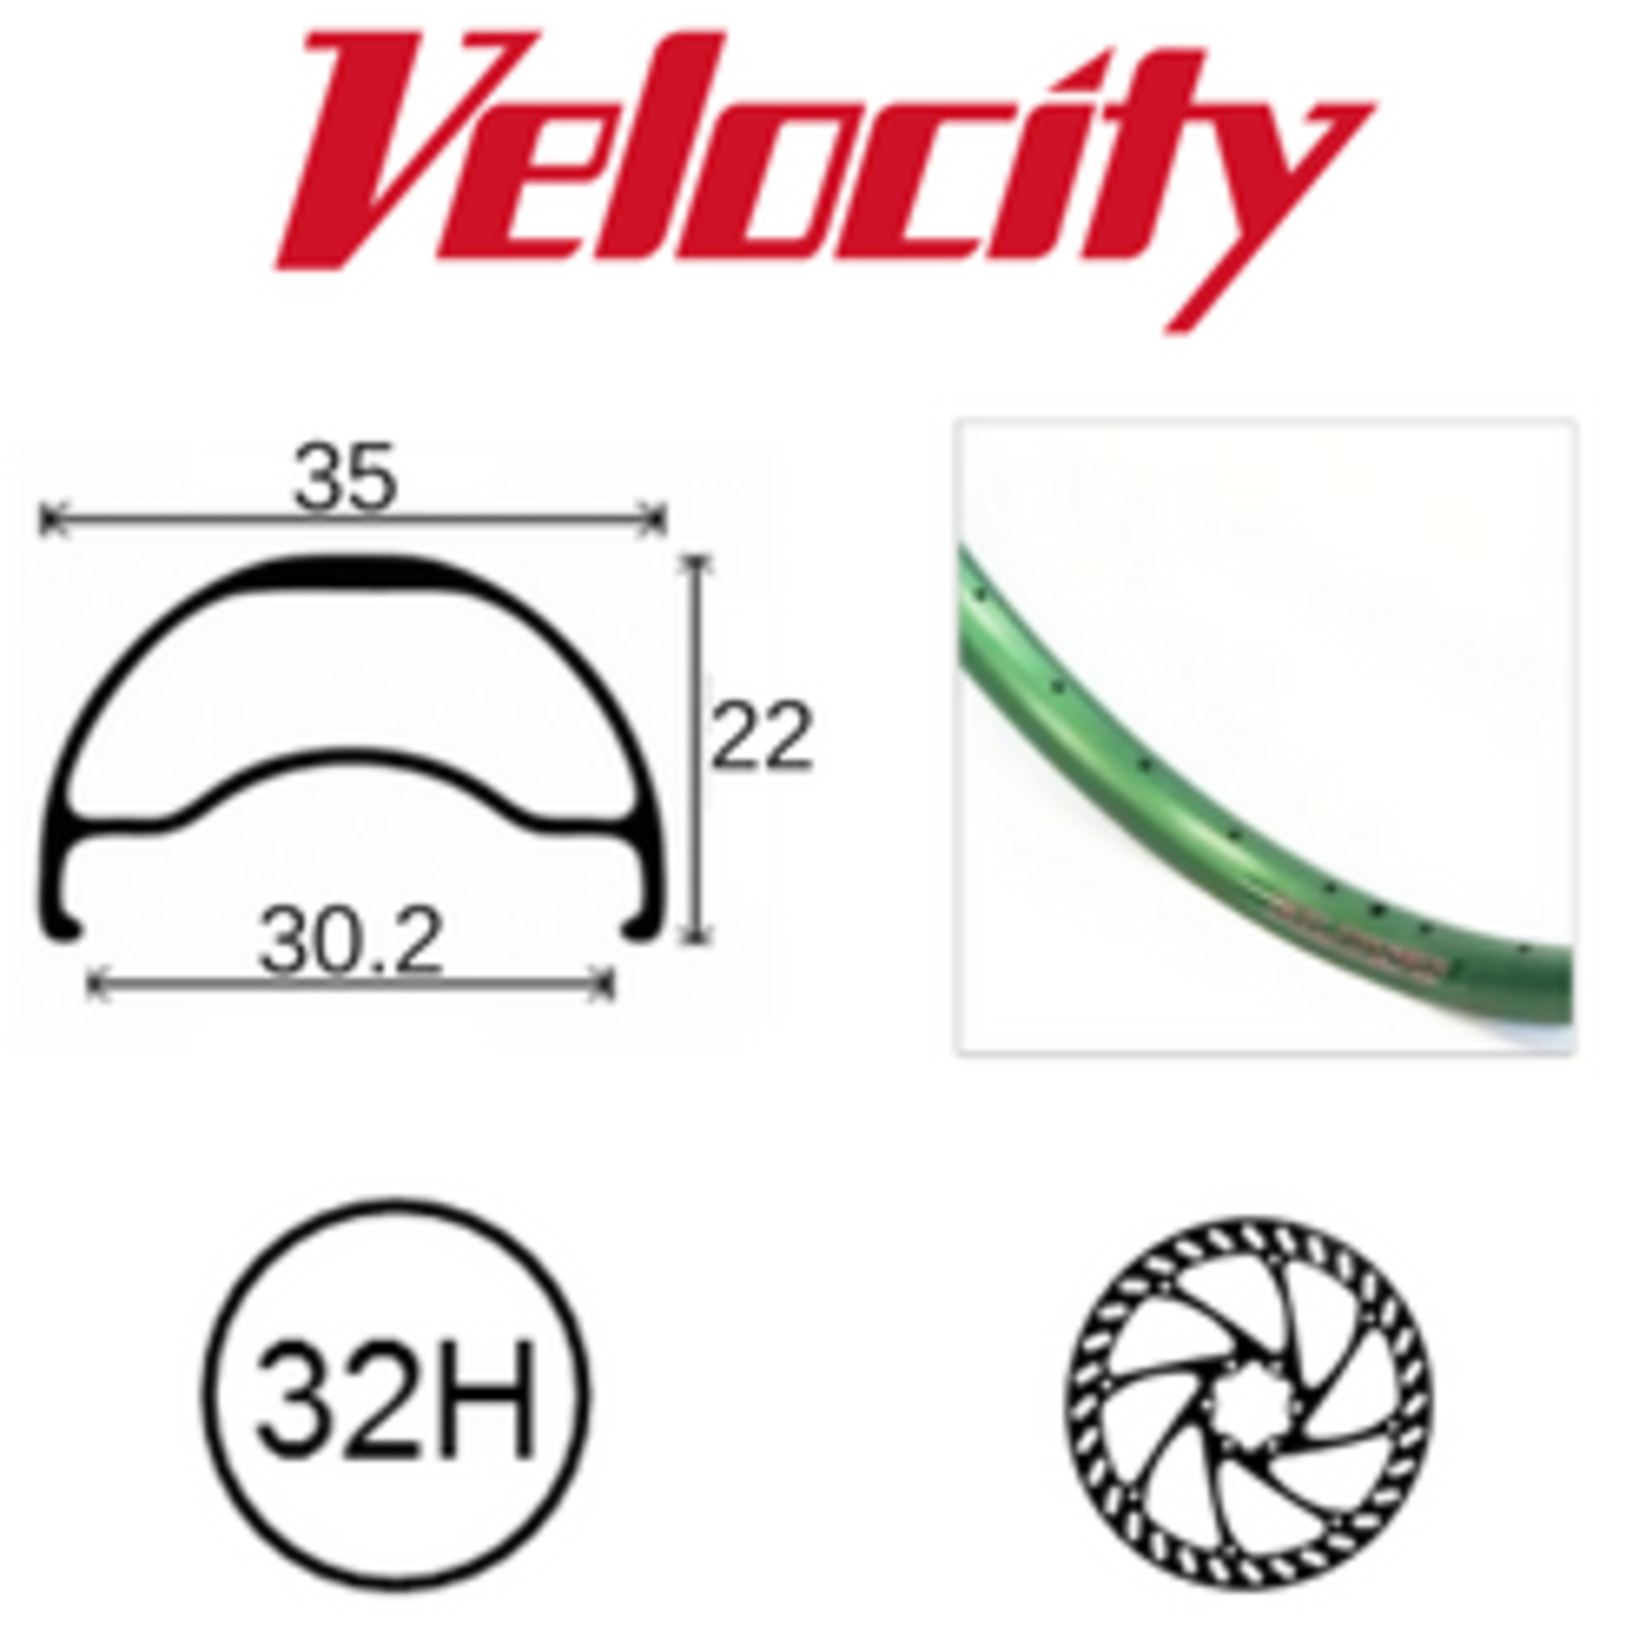 velocity Velocity Rim - Blunt 35- 26" (599) 32H - Presta Valve - Disc Brake - D/W - Green